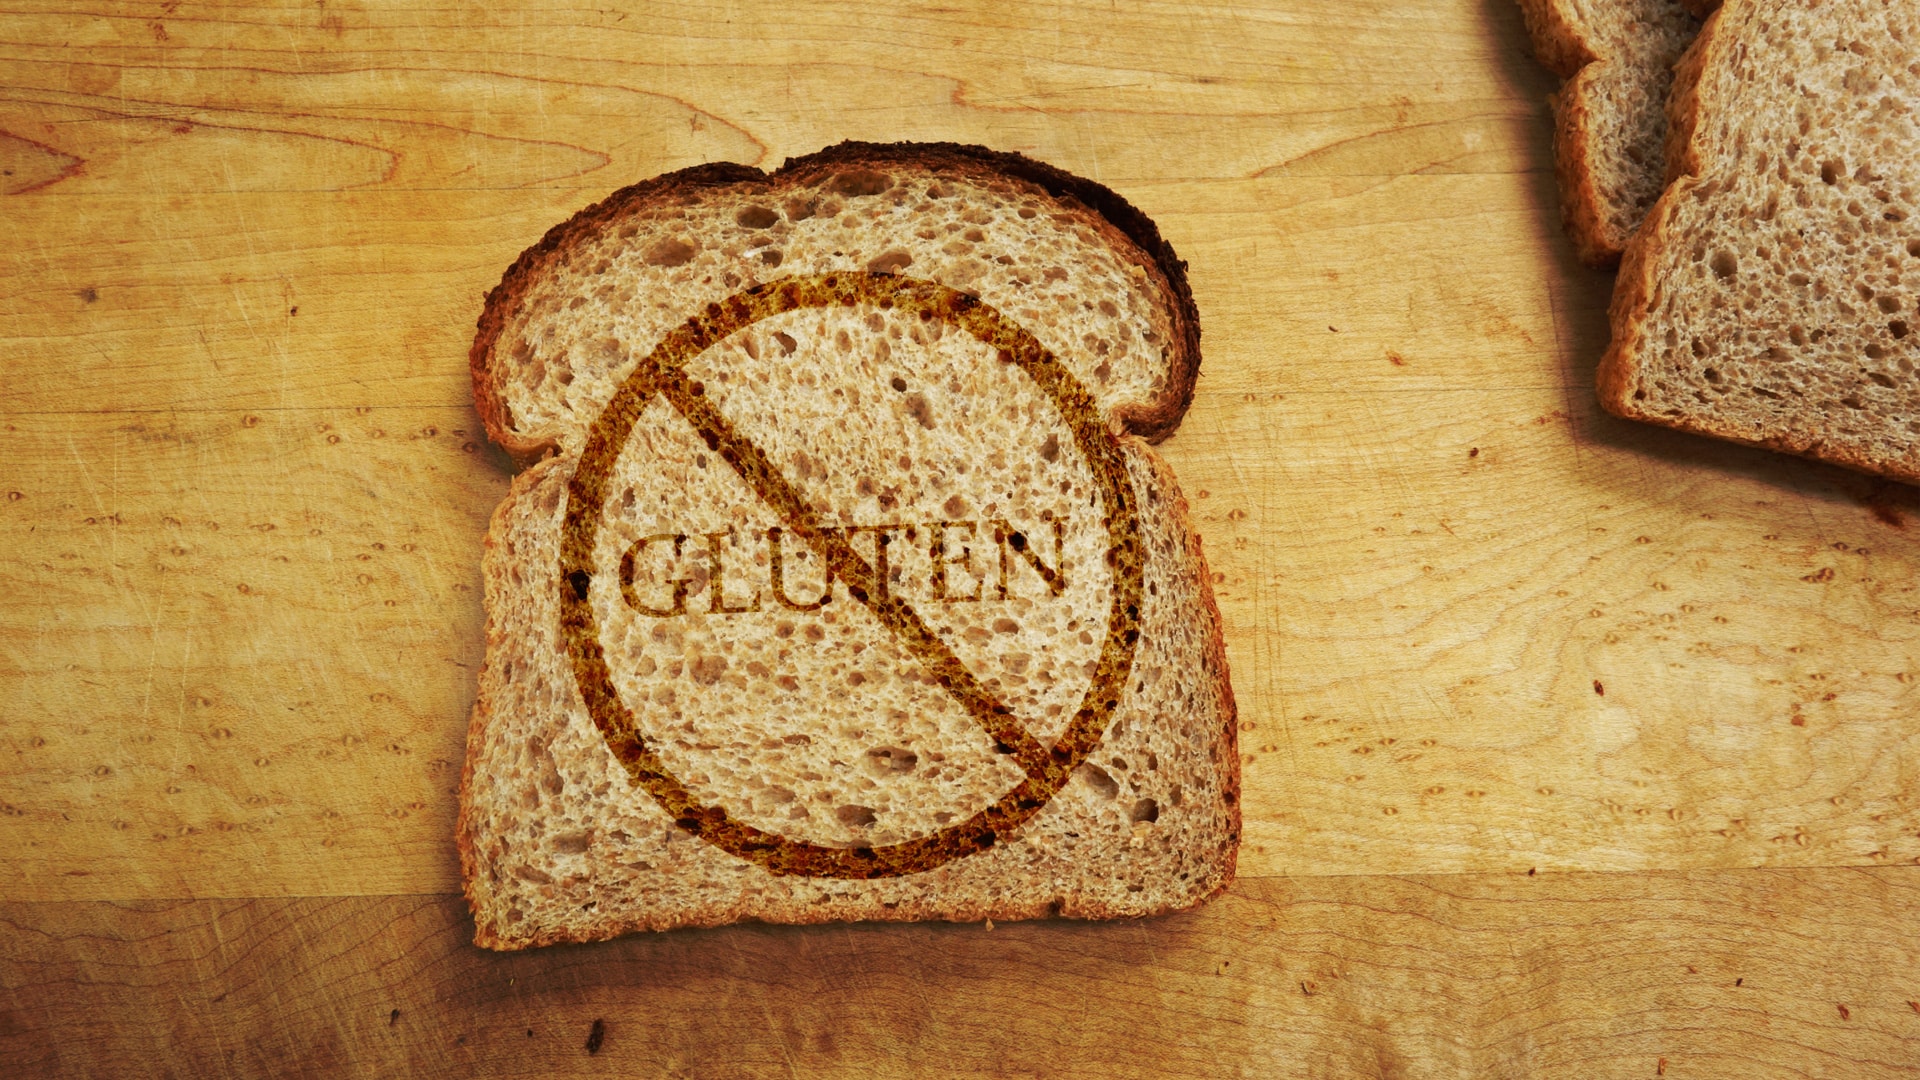 intolerancia ao gluten